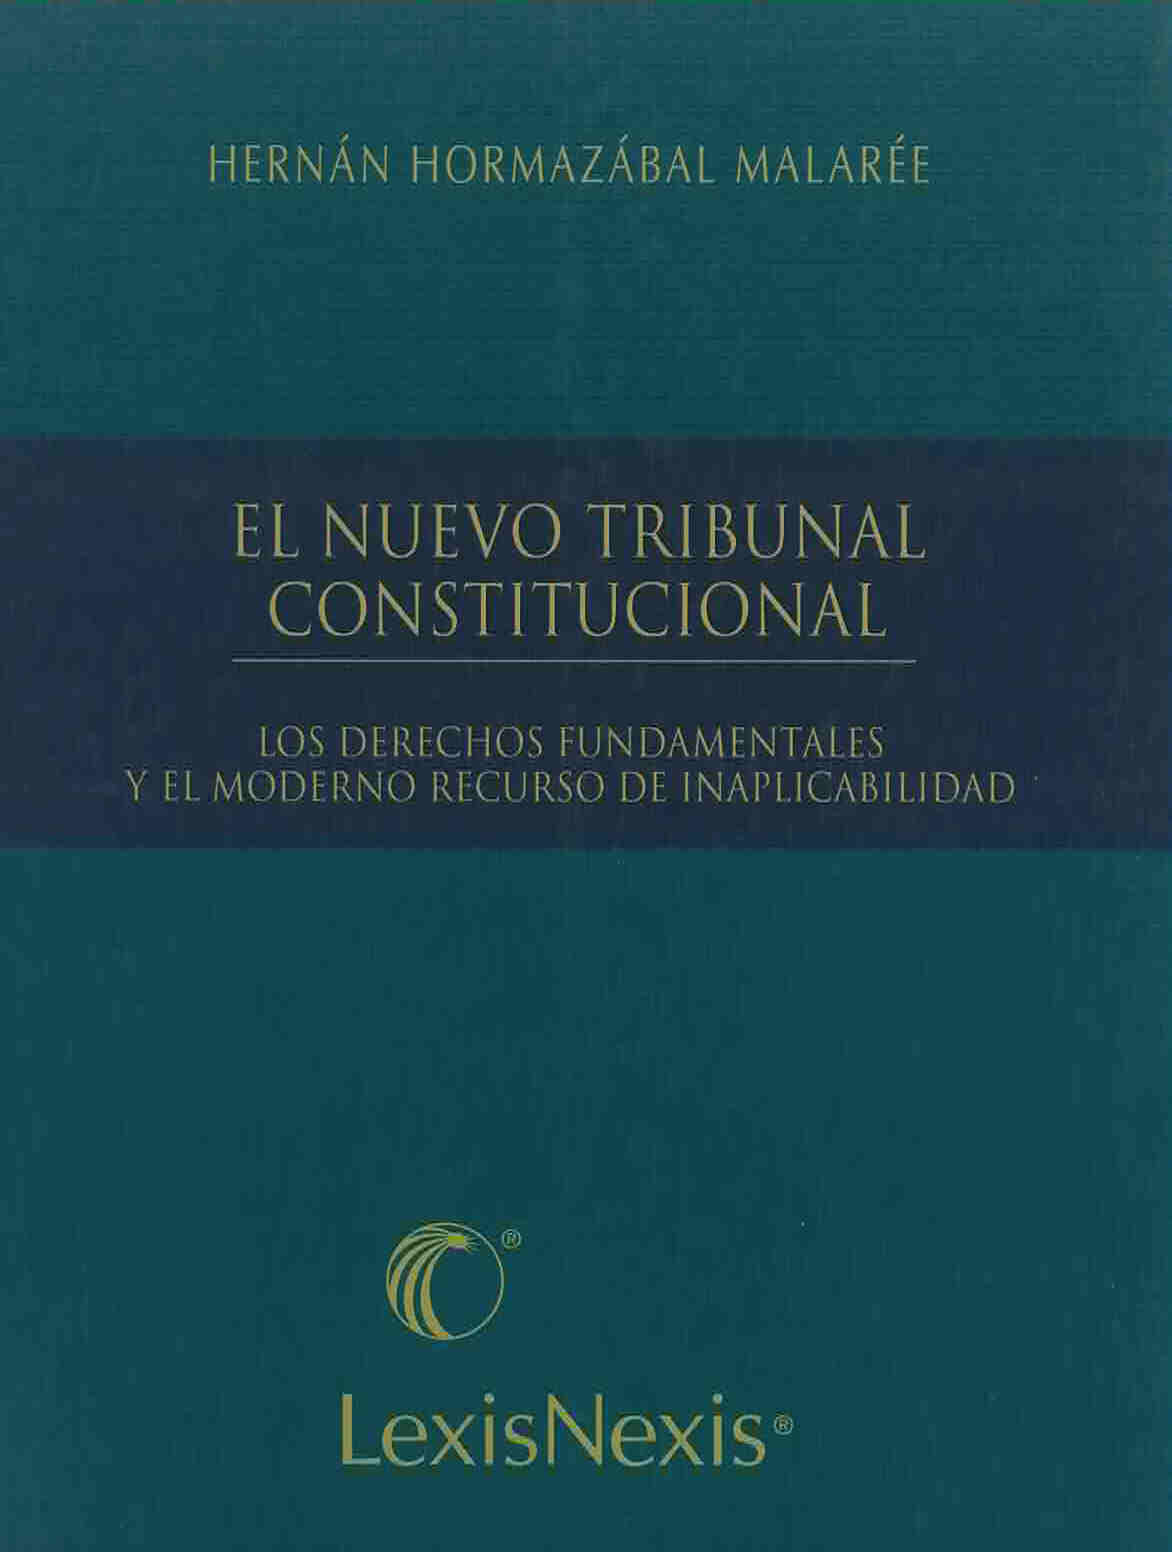 El nuevo tribunal constitucional, los derechos fundamentales y el moderno recurso de inaplicabilidad